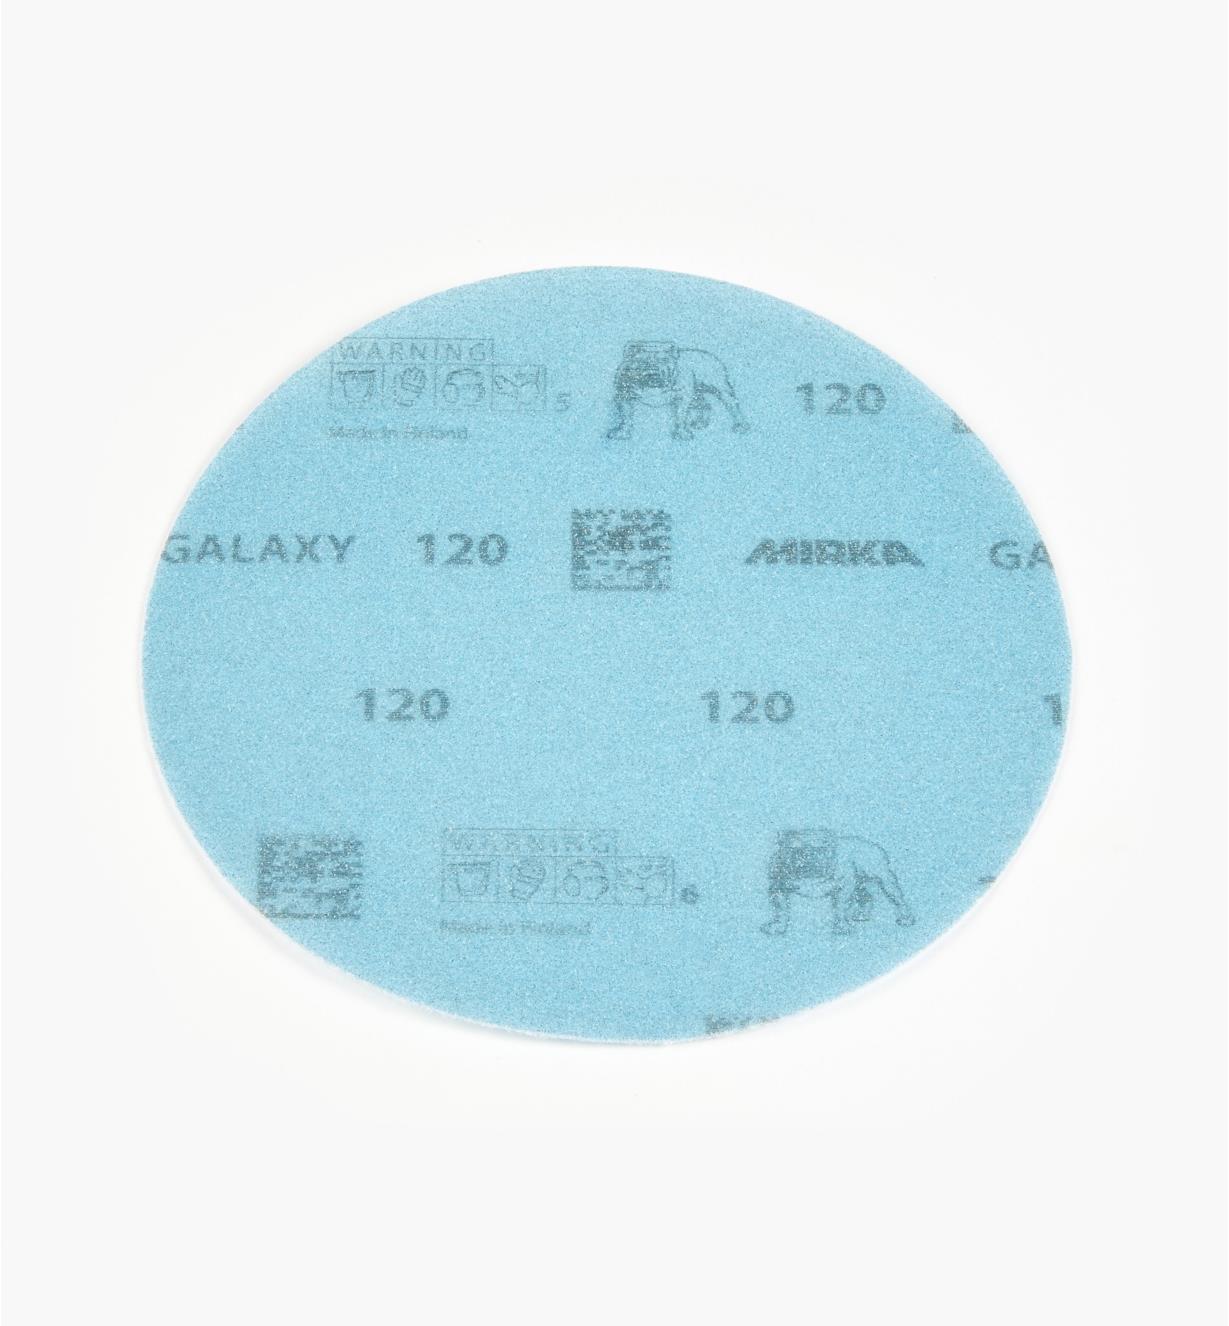 08K2105 - Disque abrasif autoagrippant Galaxy, 6 po, grain 120, l'unité